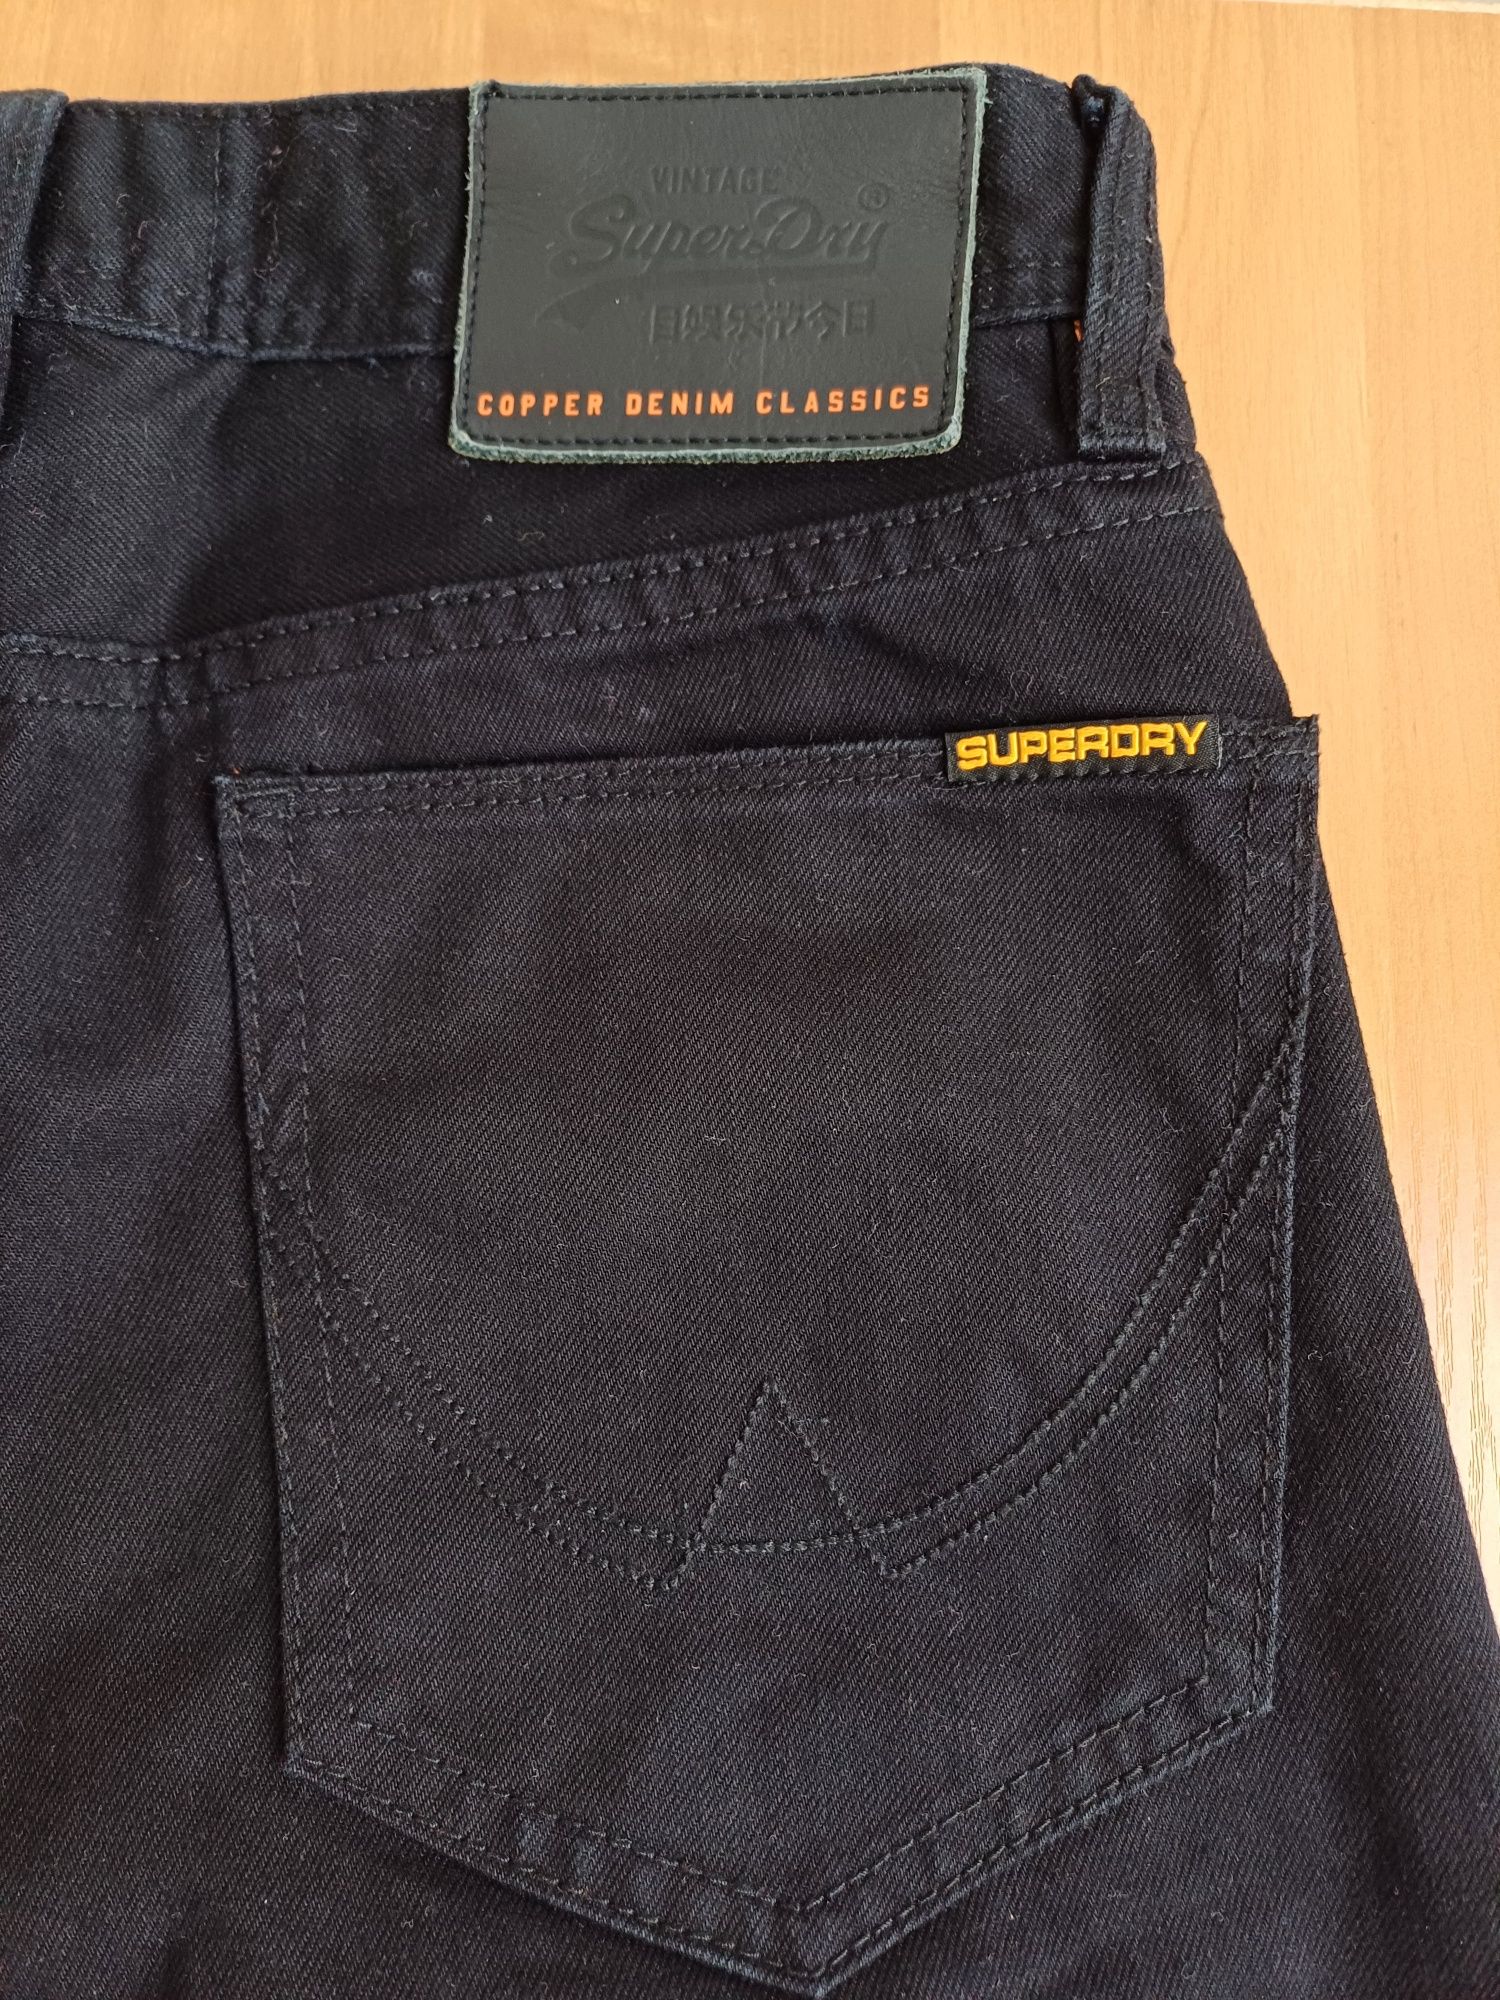 Новые чёрные джинсы SUPERDRY OFFICER (оригинал) мужские 28×32